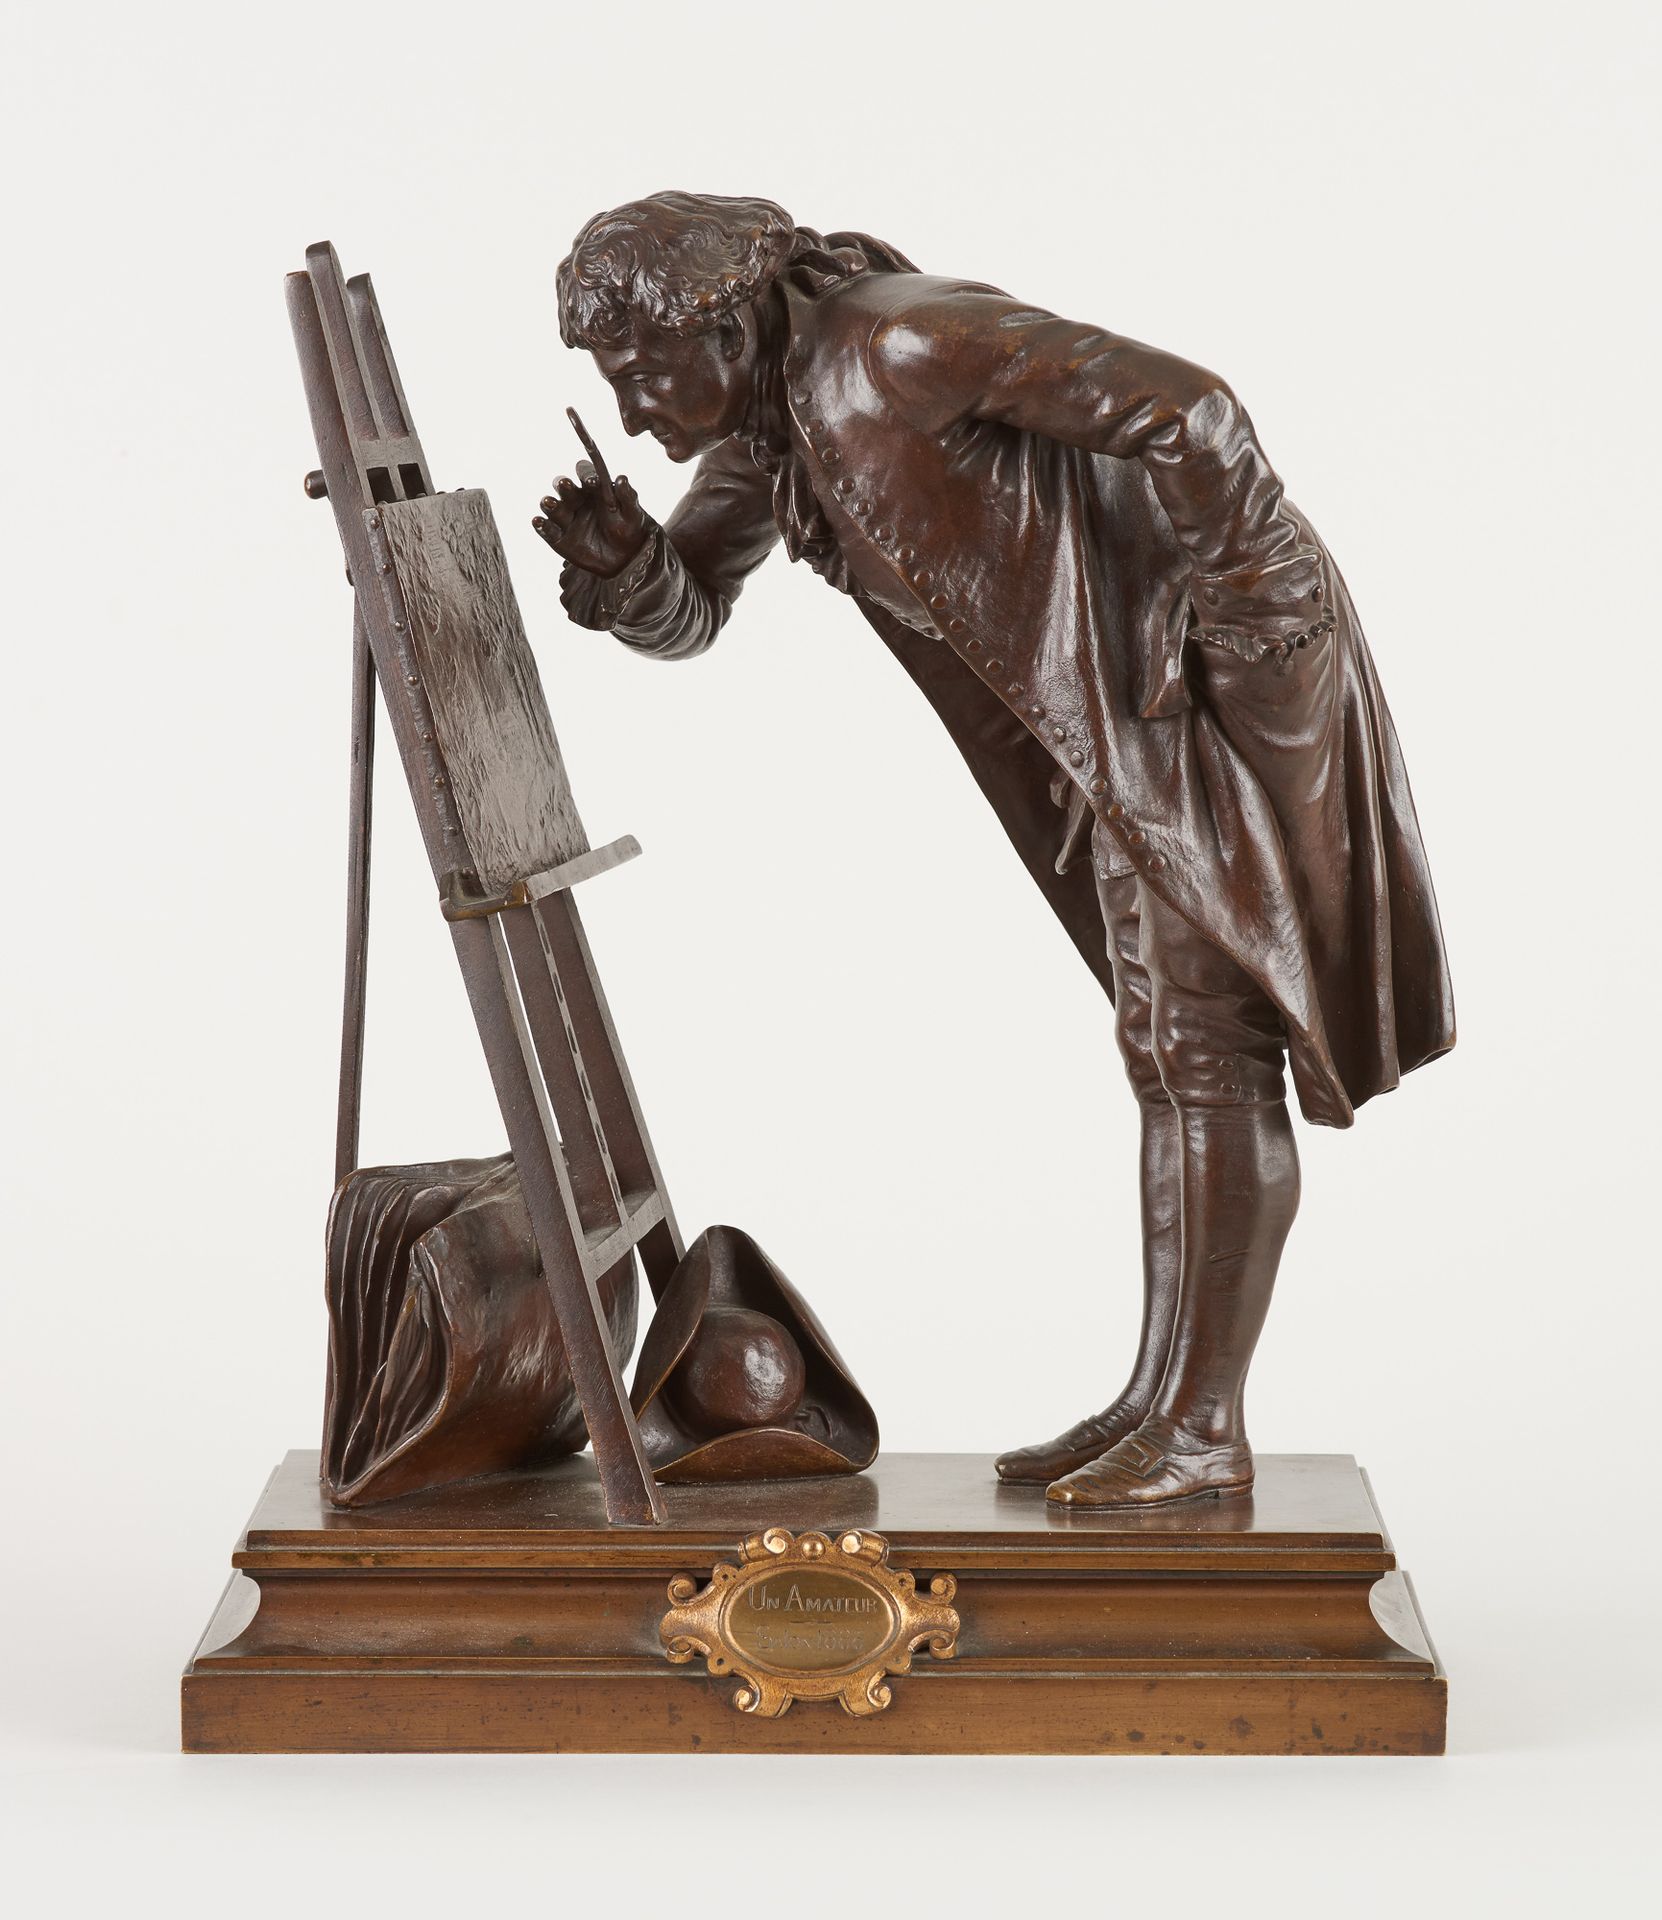 Pierre Louis DÉTRIER École française (1822-1897) 带有棕色铜锈的青铜雕塑：1888年沙龙上的一个业余爱好者。

&hellip;